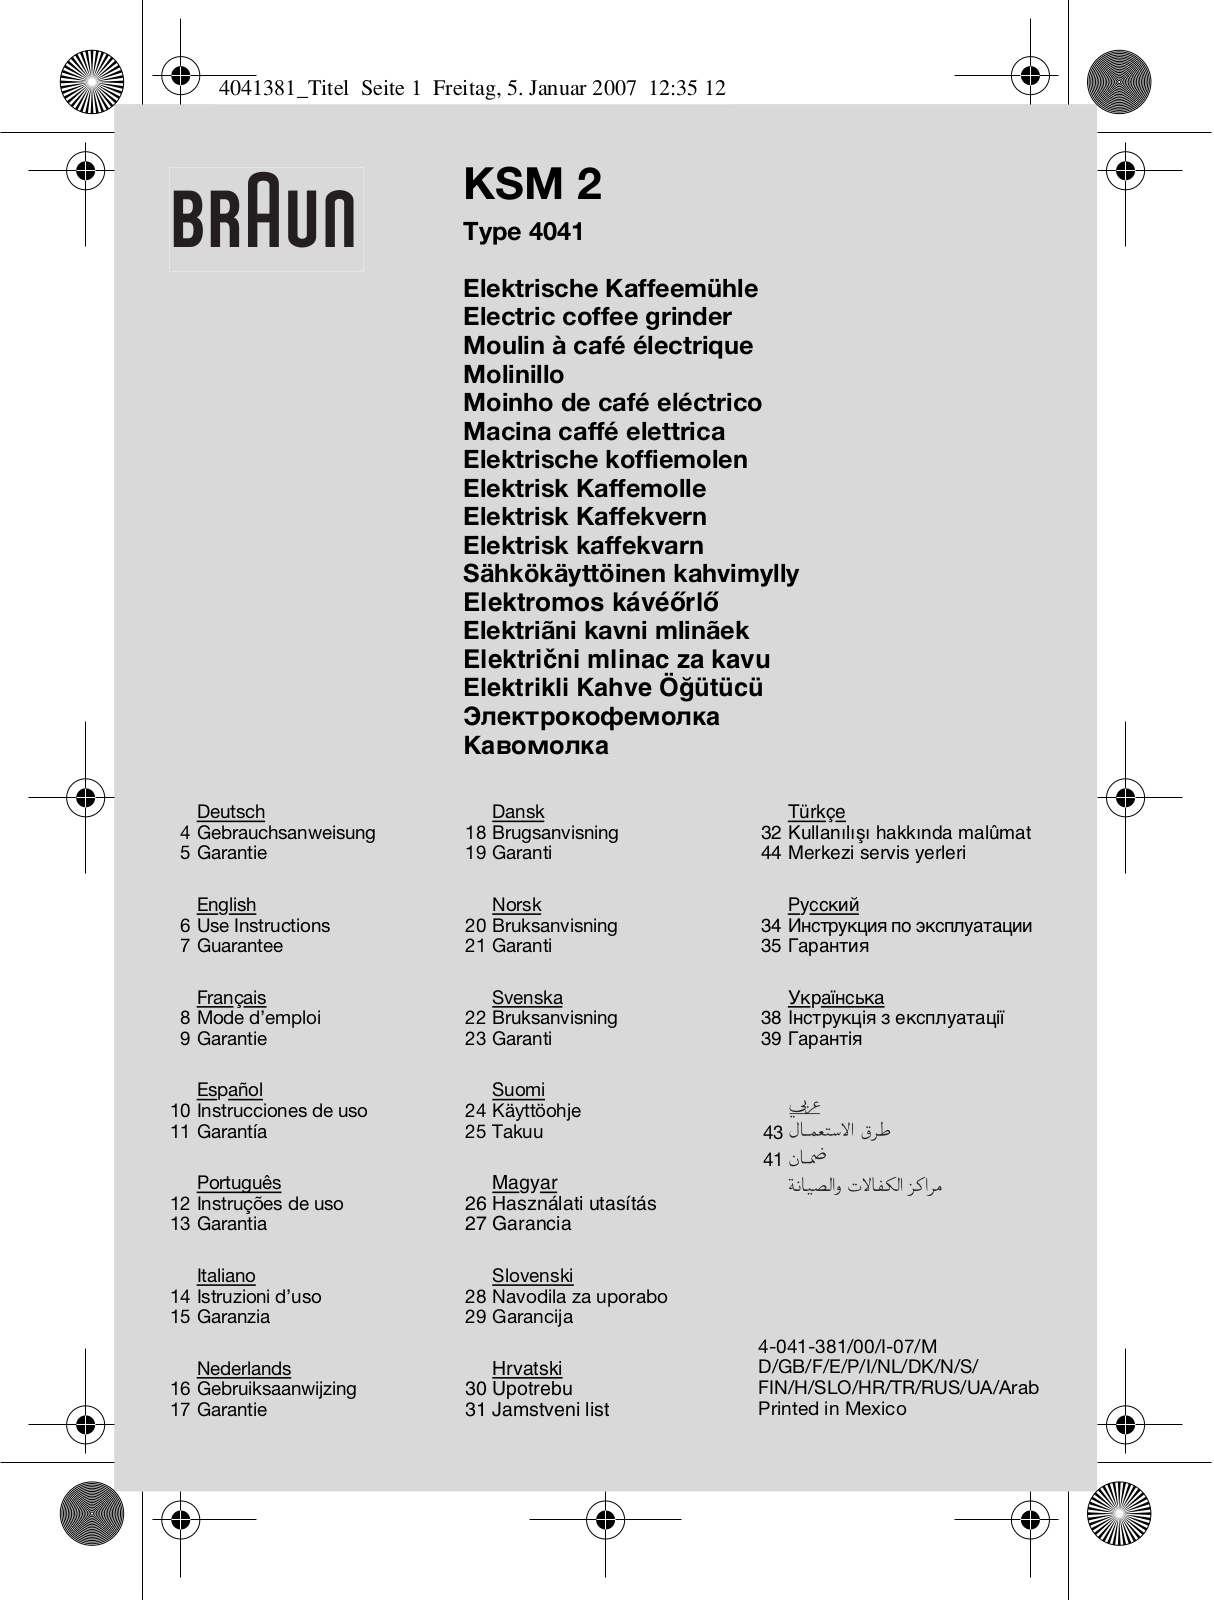 BRAUN KSM2 User Manual